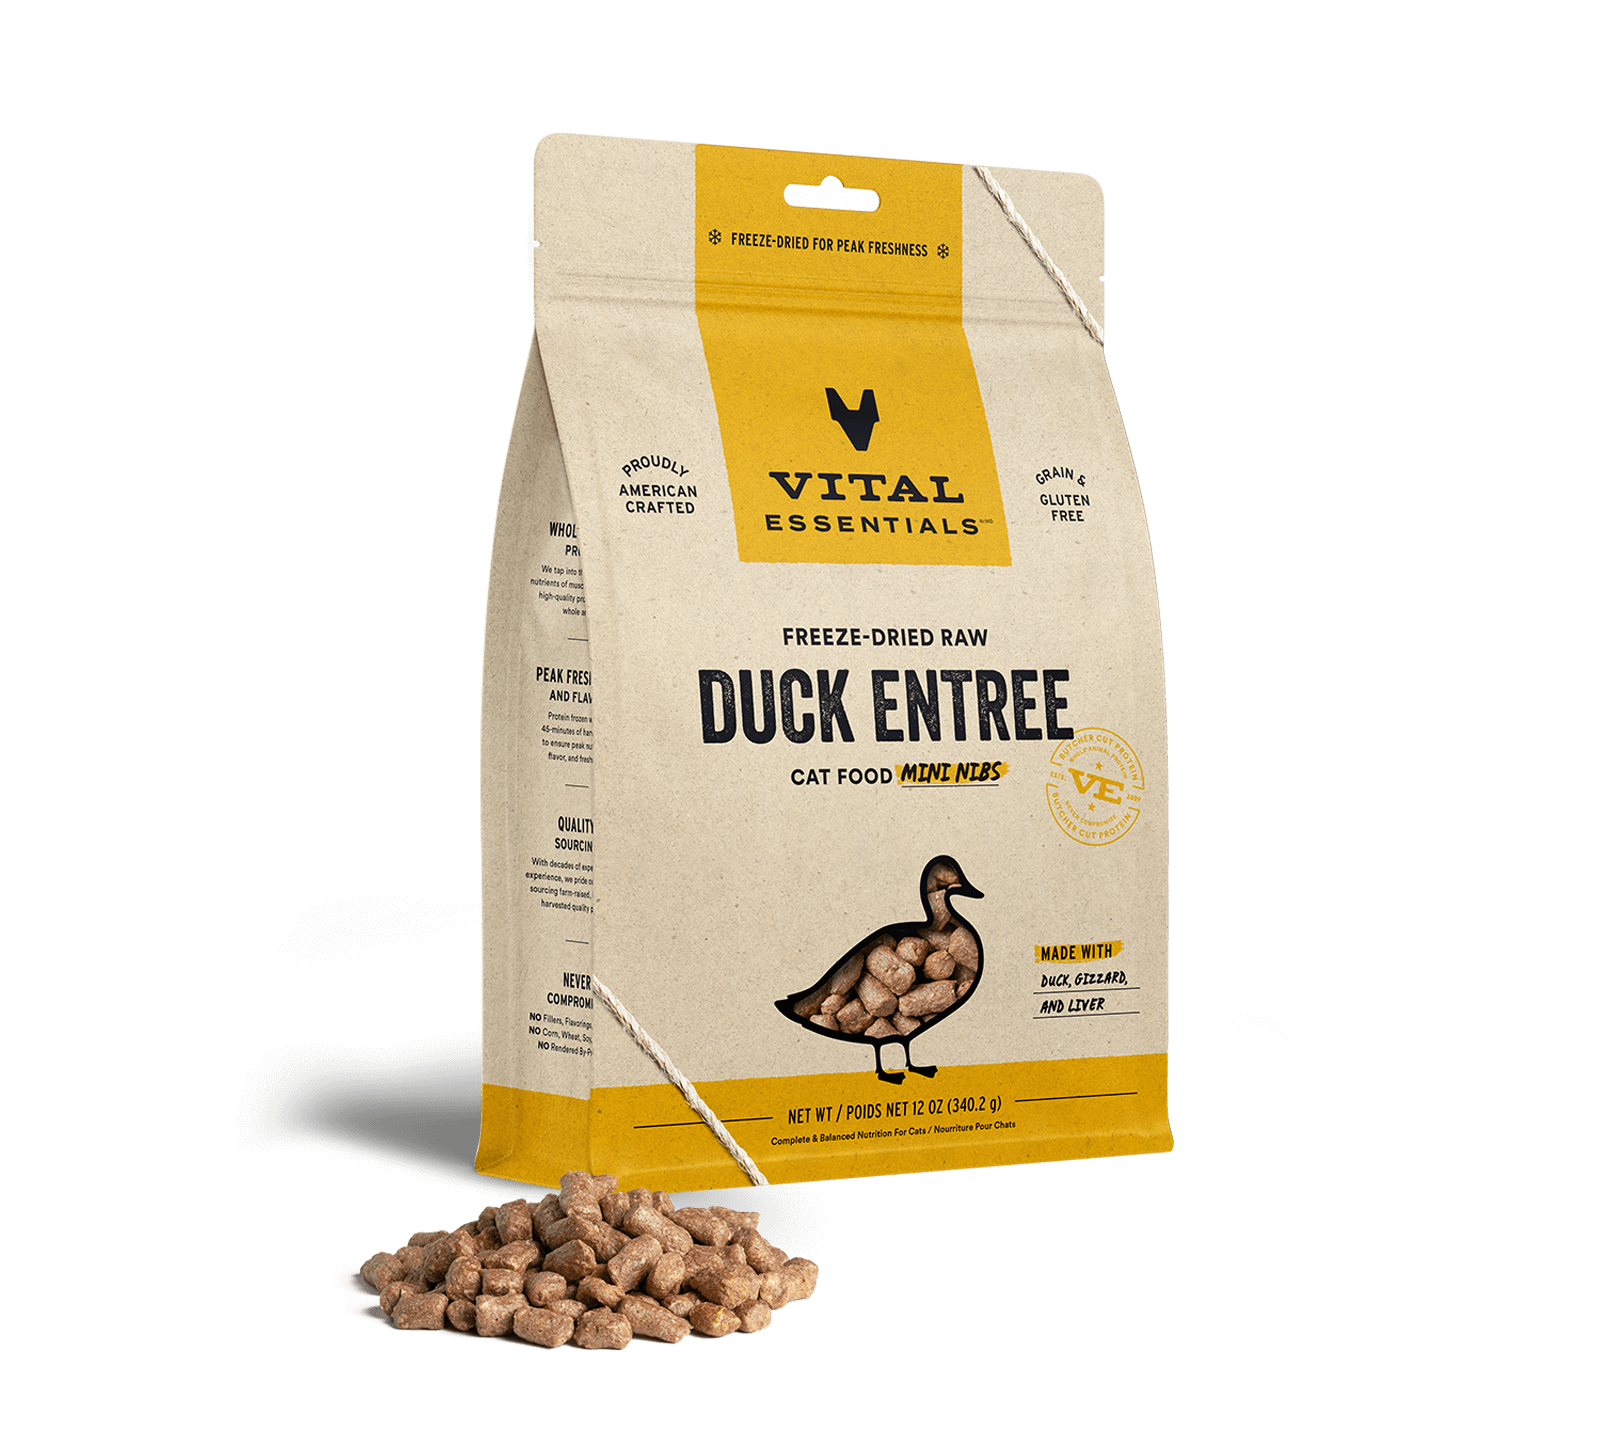 Vital Essentials Freeze-Dried Raw Duck Entree Cat Food Mini Nibs, 12 oz - Food